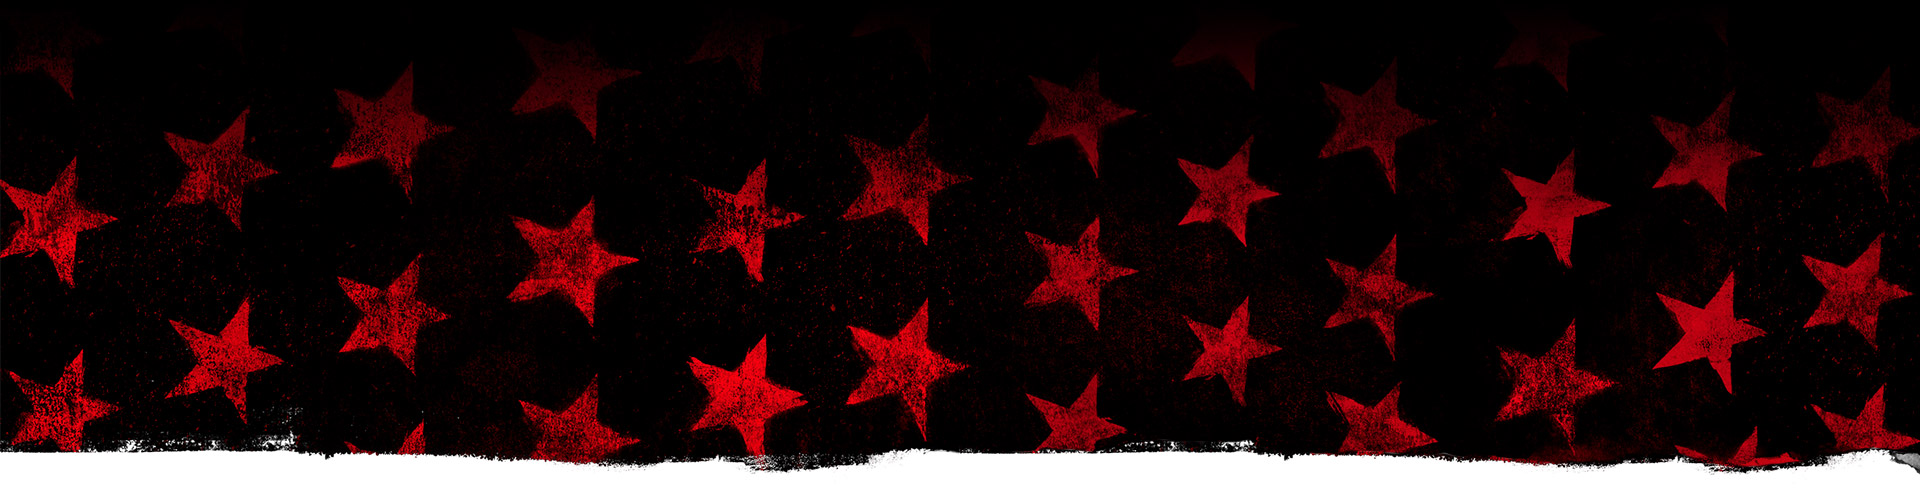 검은 배경에 붉은 별 무늬.